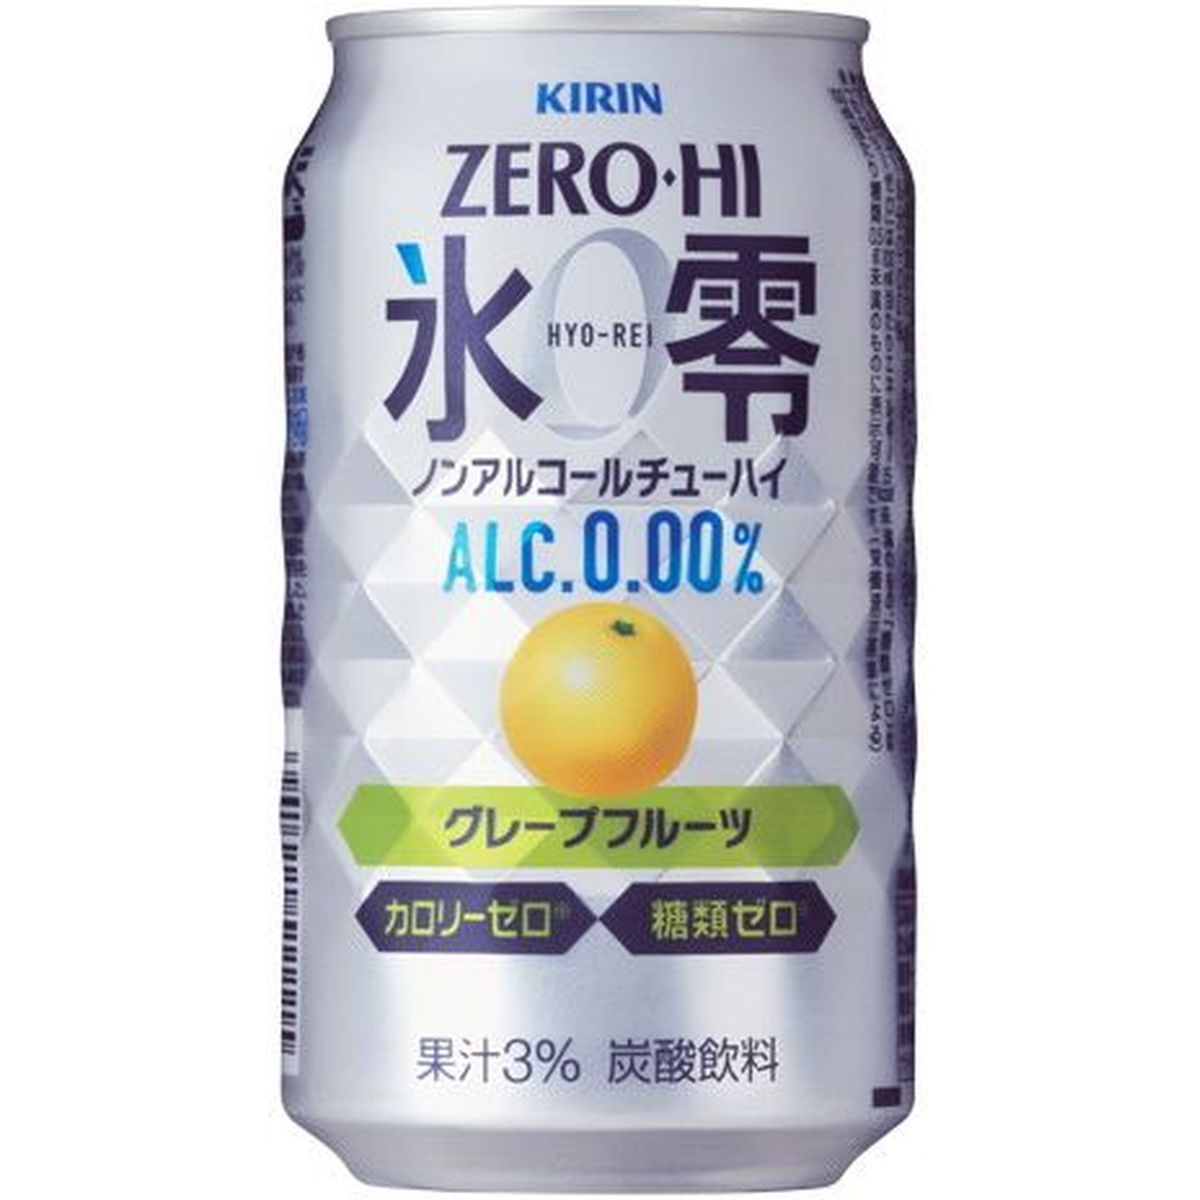 【24個入リ】キリン ゼロハイ 氷零グレープフルーツ 缶 350ml